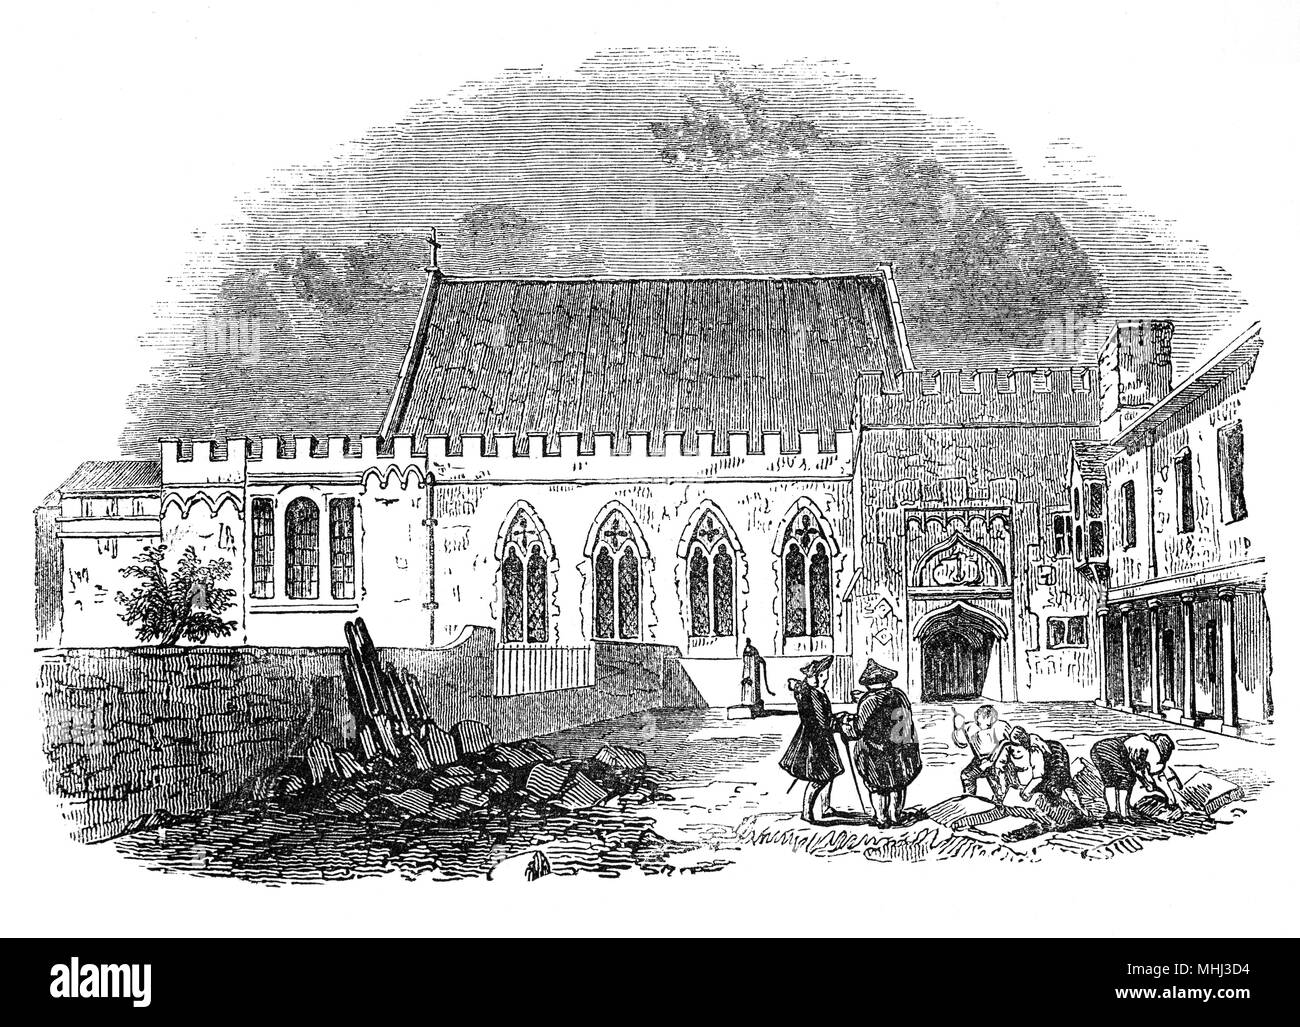 La chapelle du palais ou Ely Ely House, London townhouse des évêques d'Ely de 1290 à 1772. Le 17 octobre 1546, James Butler, 9e comte d'Ormond, un puissant propriétaire de Munster qui avait servi dans la maison du Cardinal Wolsey, dans sa jeunesse, a traversé l'Éternel querelleur Vice-d'Irlande, Sir Anthony St Leger, qui était en visite à Londres avec sa famille. Ils ont été invités à dîner au palais d'Ely, où Ormond fut empoisonné avec son intendant et 16 de sa maison, il a été largement supposé, à l'ordre de St Leger. Banque D'Images